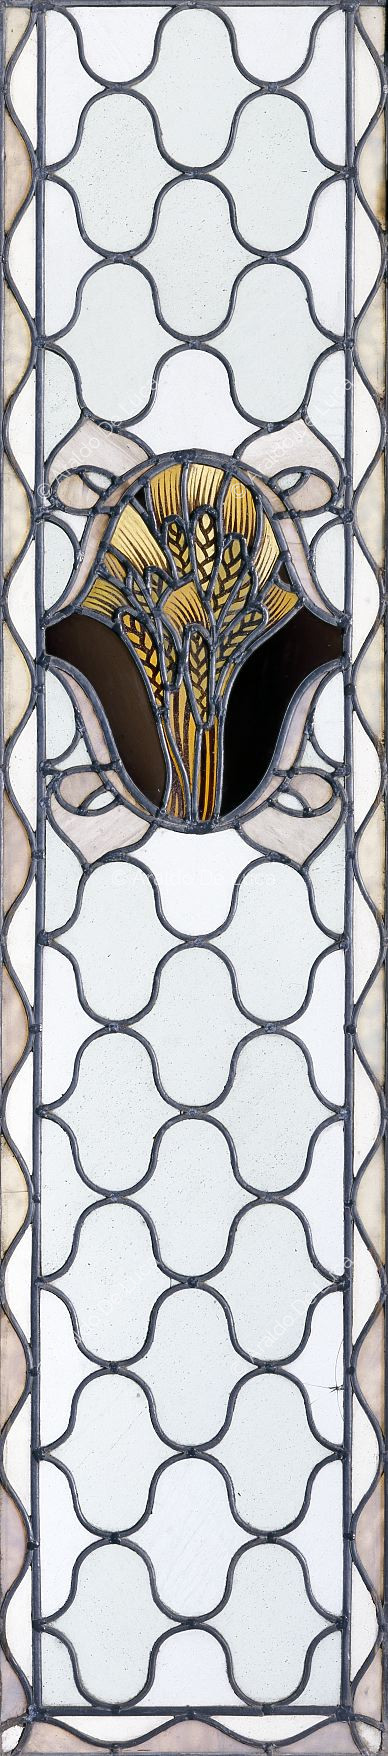 Buntglasfenster mit geometrischem Motiv und Stacheln